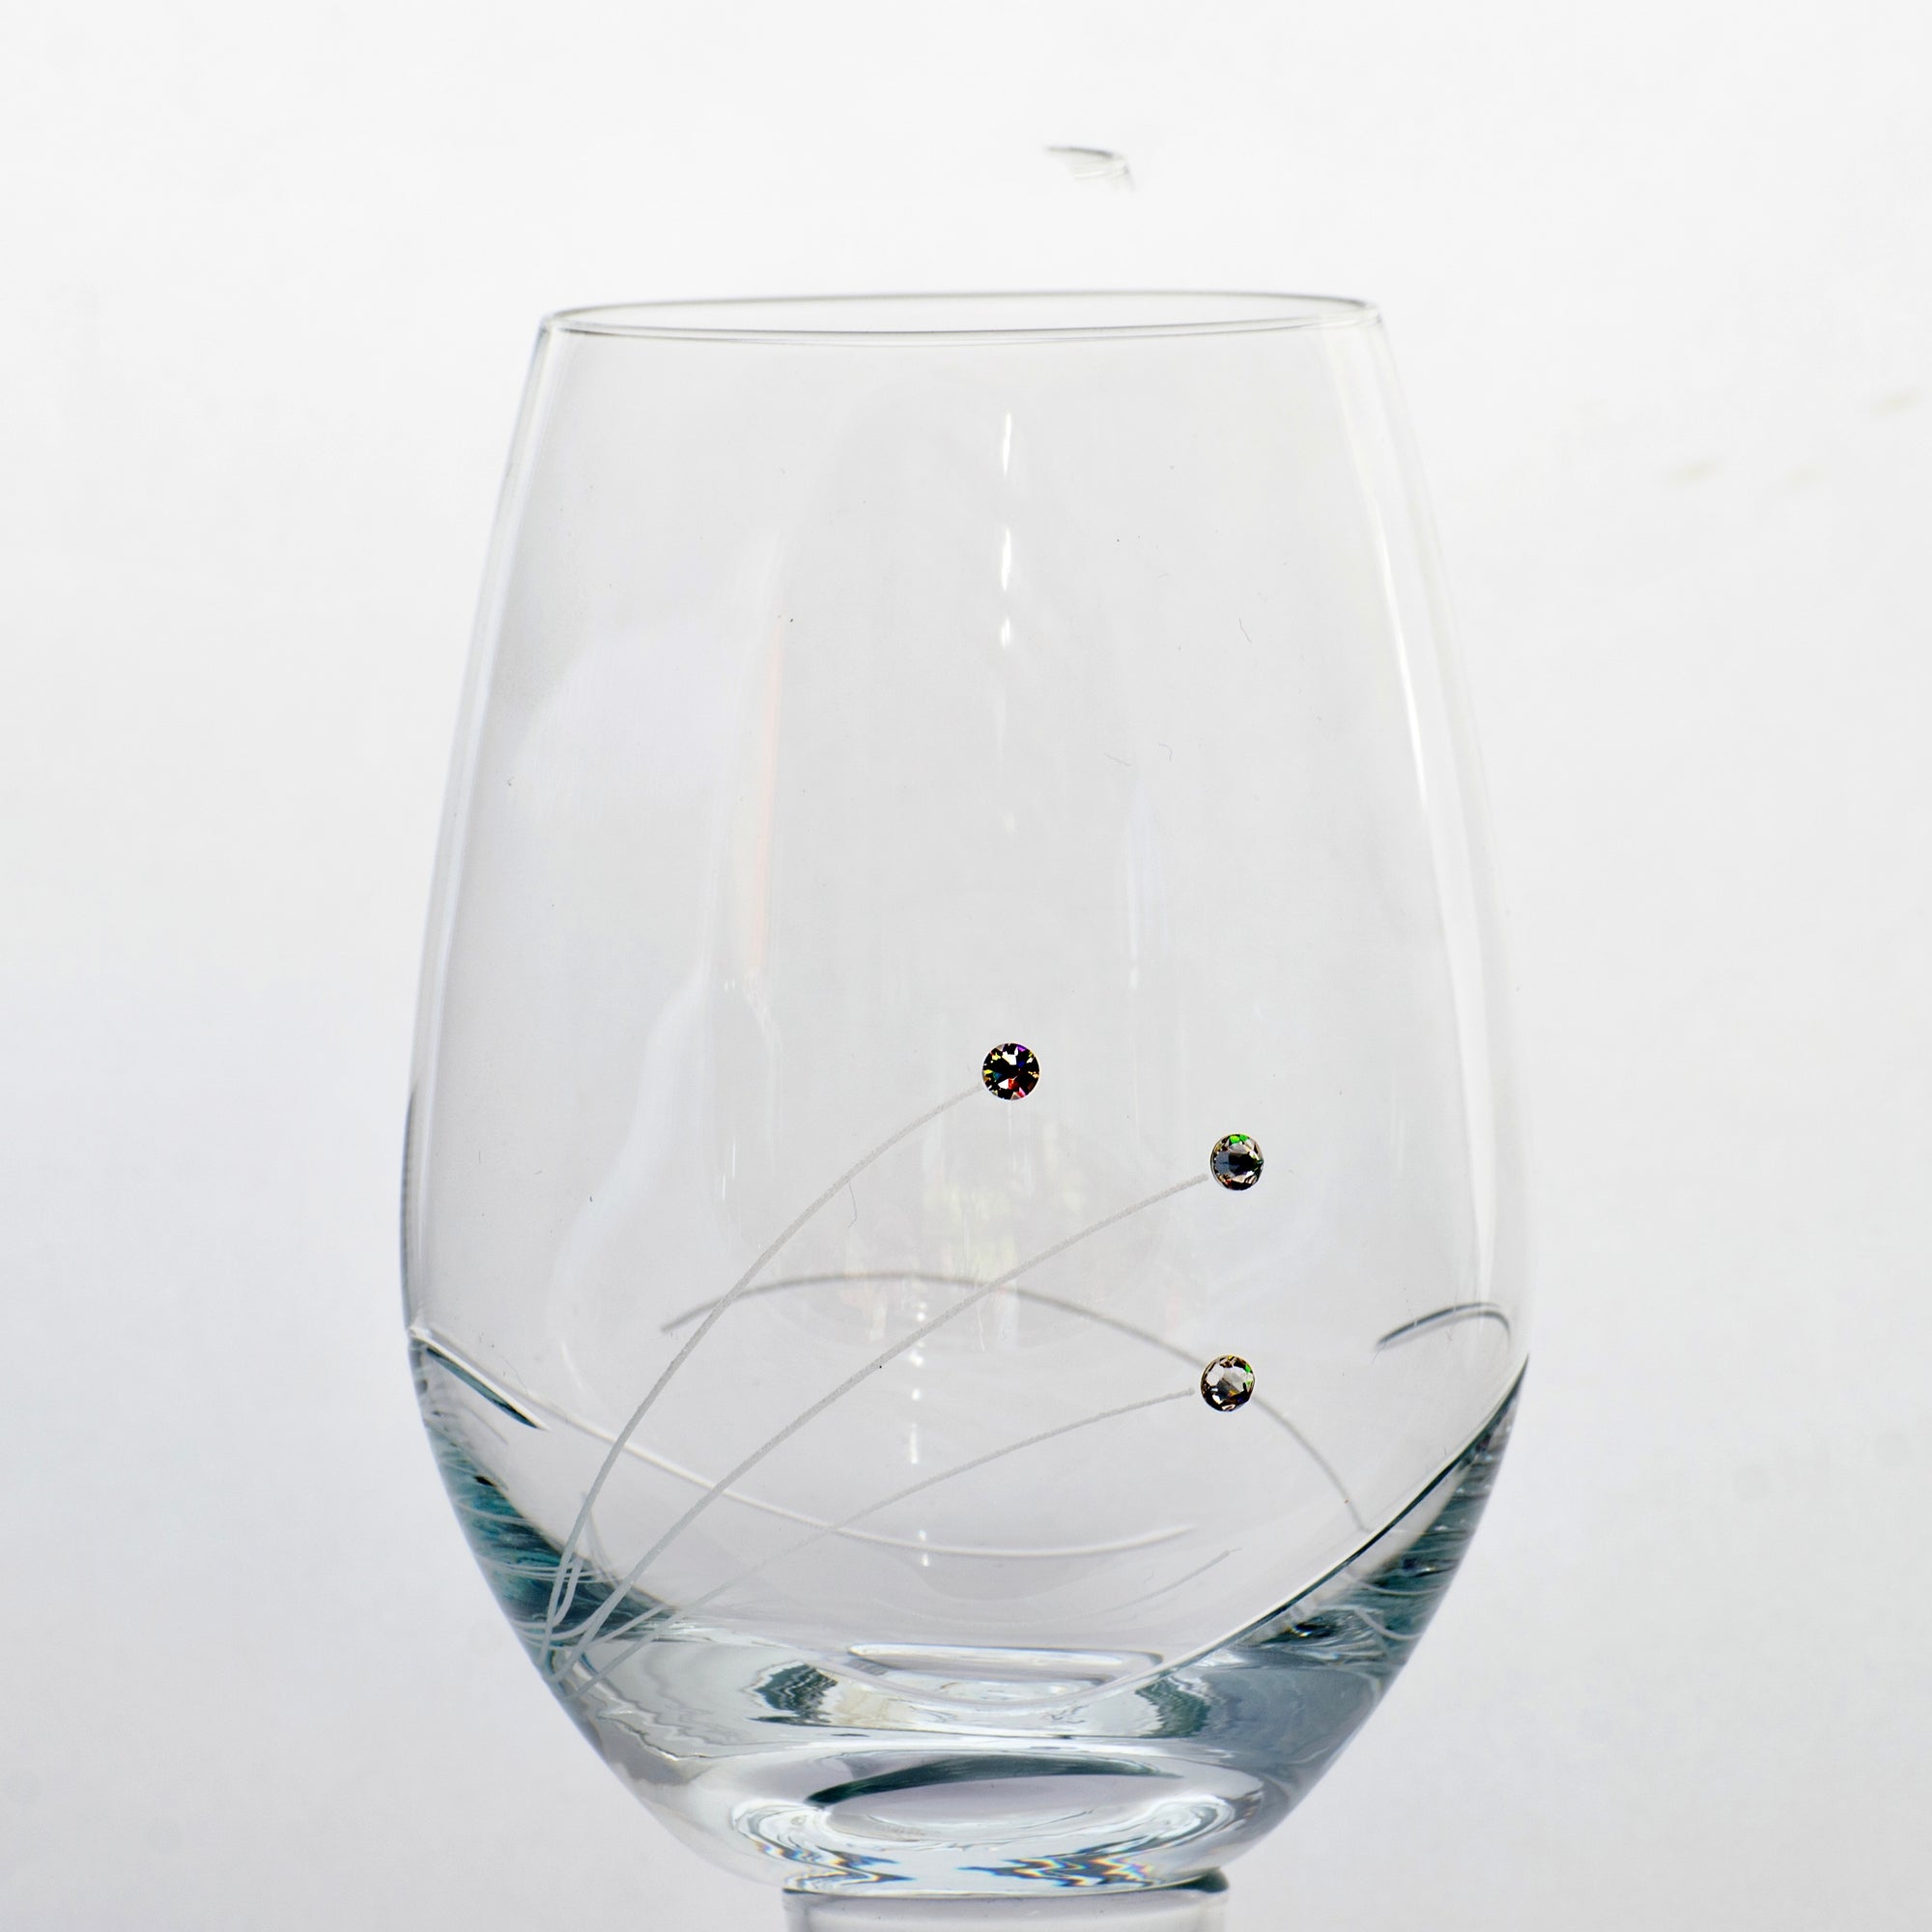 Sparkle Carafe and Red Wine Glasses w/ Swarovski Diamonds - Set of 5